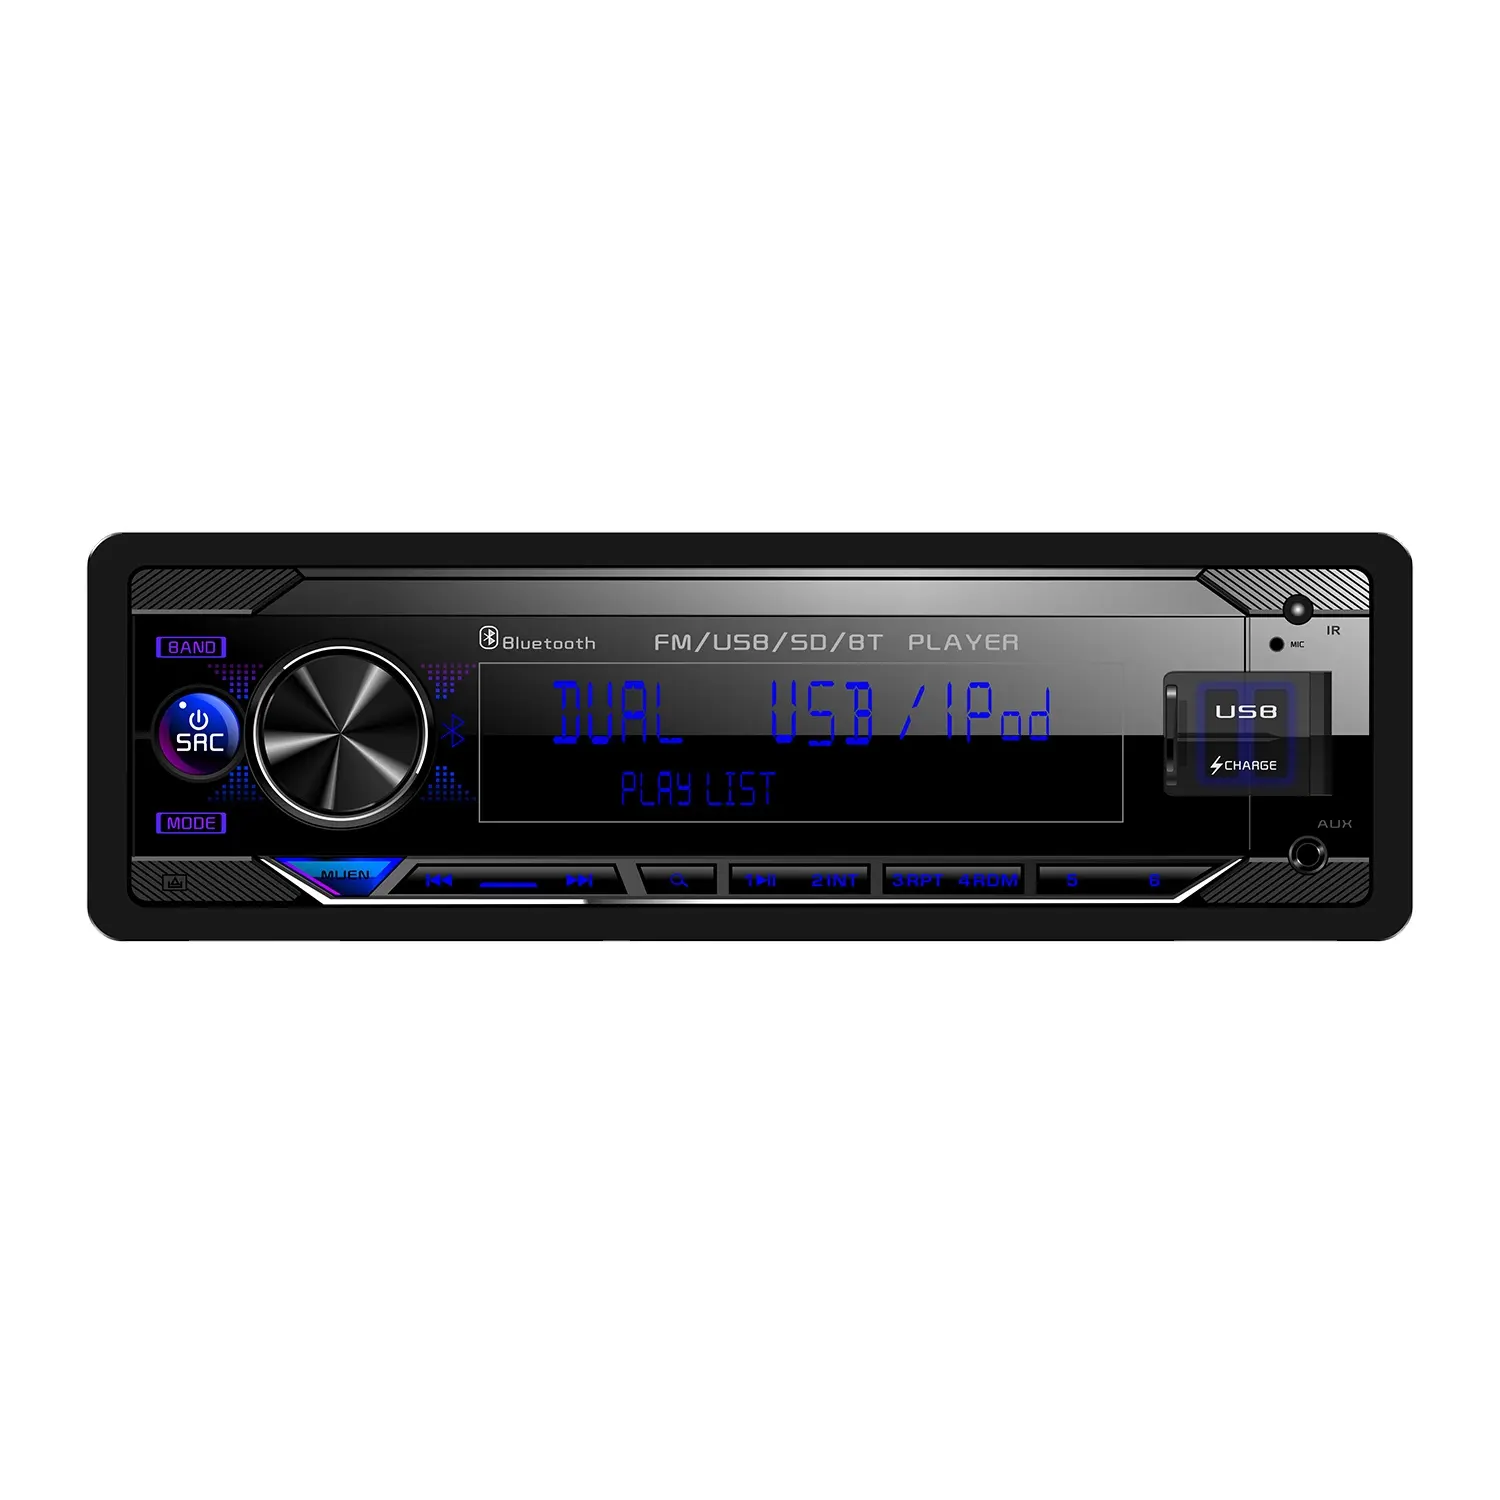 새로운 자동차 LCD 휴대용 아날로그 TV 플레이어 배치 도매 고품질 평면 패널 디스플레이